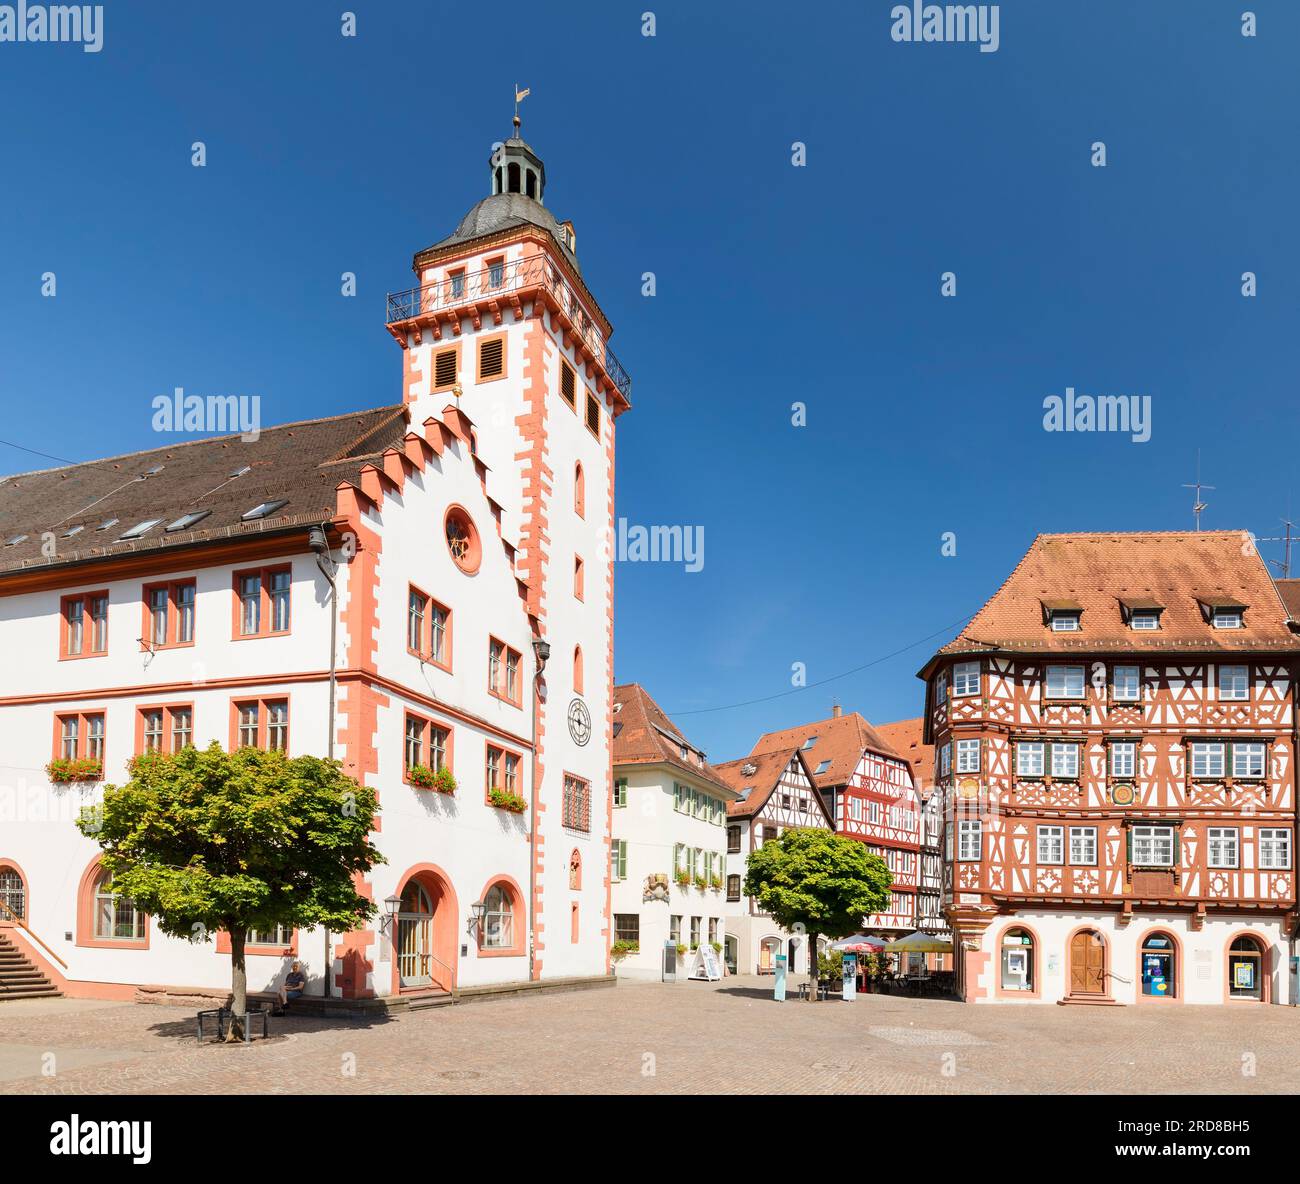 Rathaus und Palmsches Haus am Marktplatz, Mosbach, Neckartal, Odenwald, Baden-Württemberg, Deutschland, Europa Stockfoto